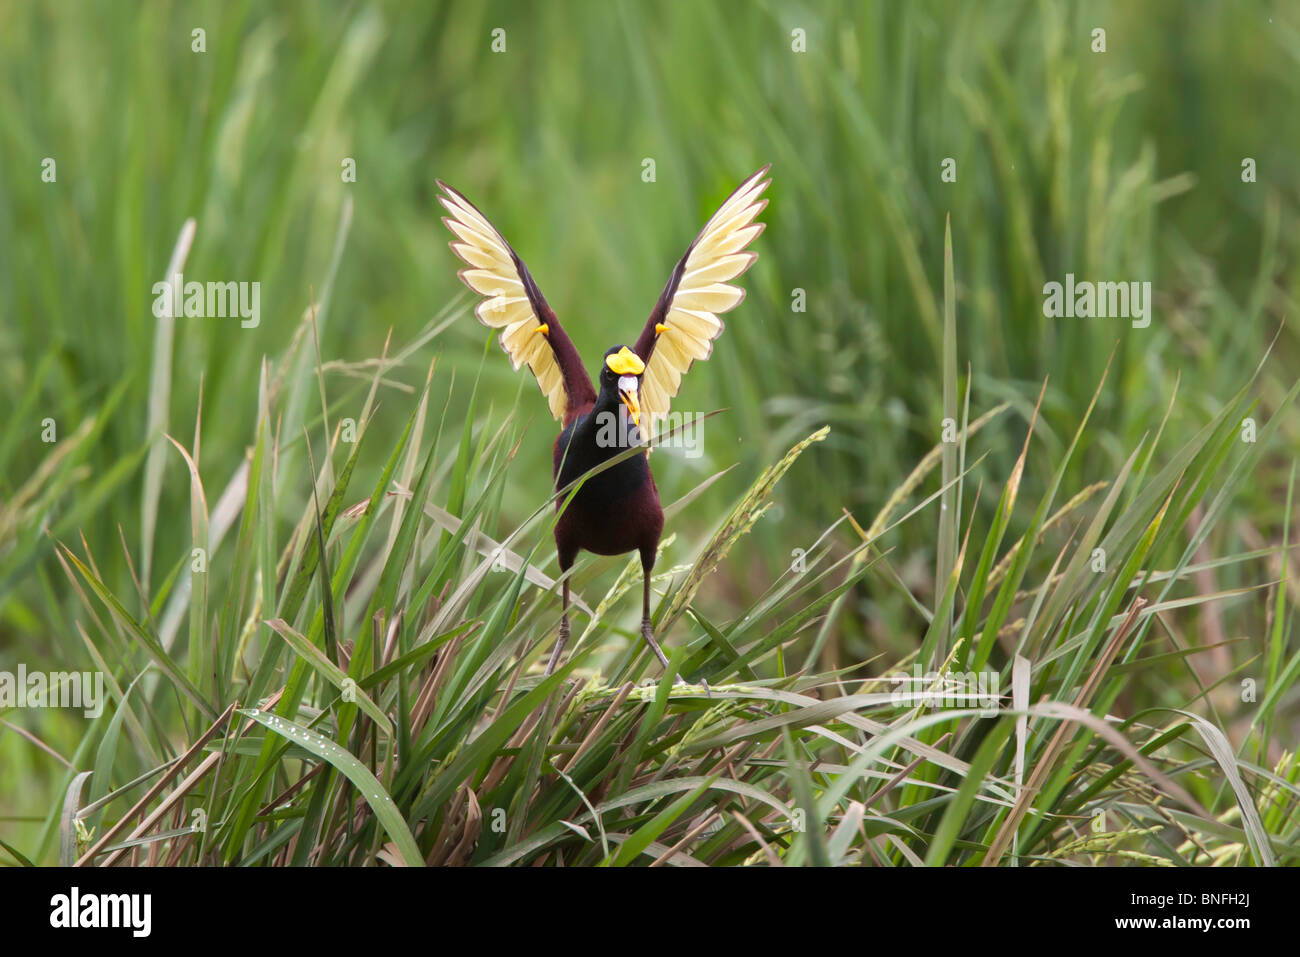 Nördlichen Jacana Erwachsenen Flügel Display nach der Landung zu tun. Beachten Sie gelbe Sporen auf Flügeln. Stockfoto